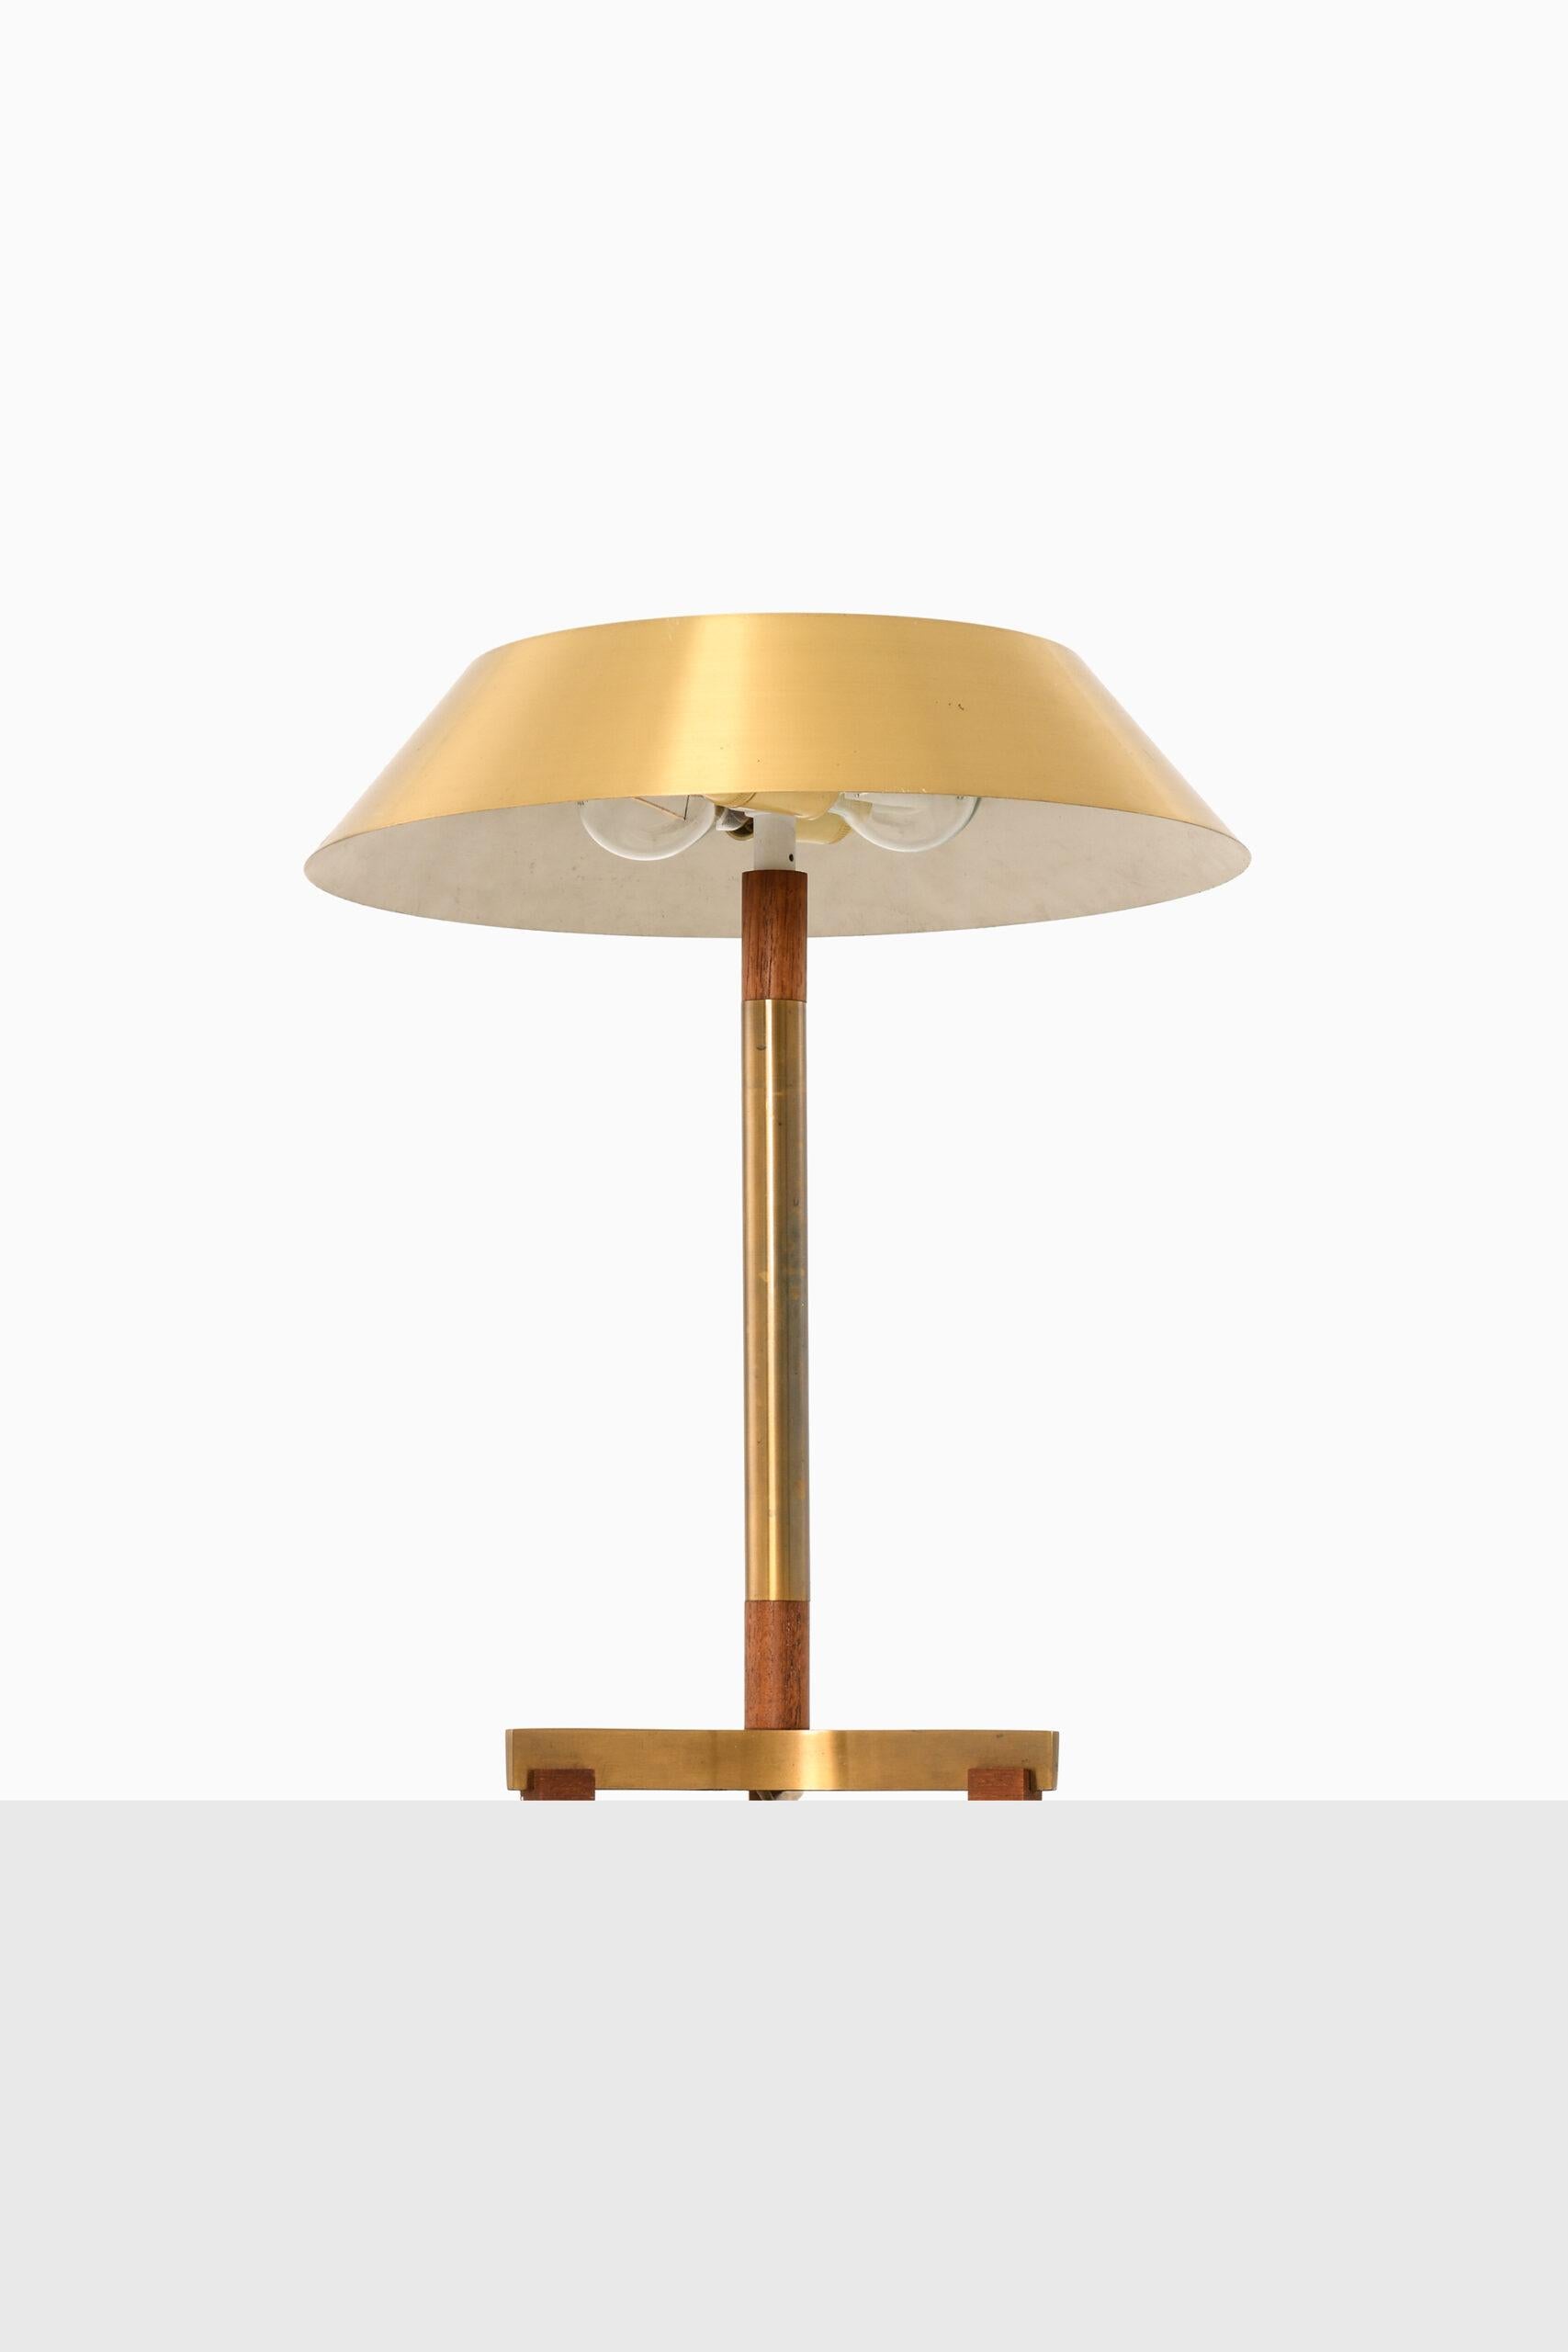 Rare table lamp model President designed by Jo Hammerborg. Produced by Fog & Mørup in Denmark.